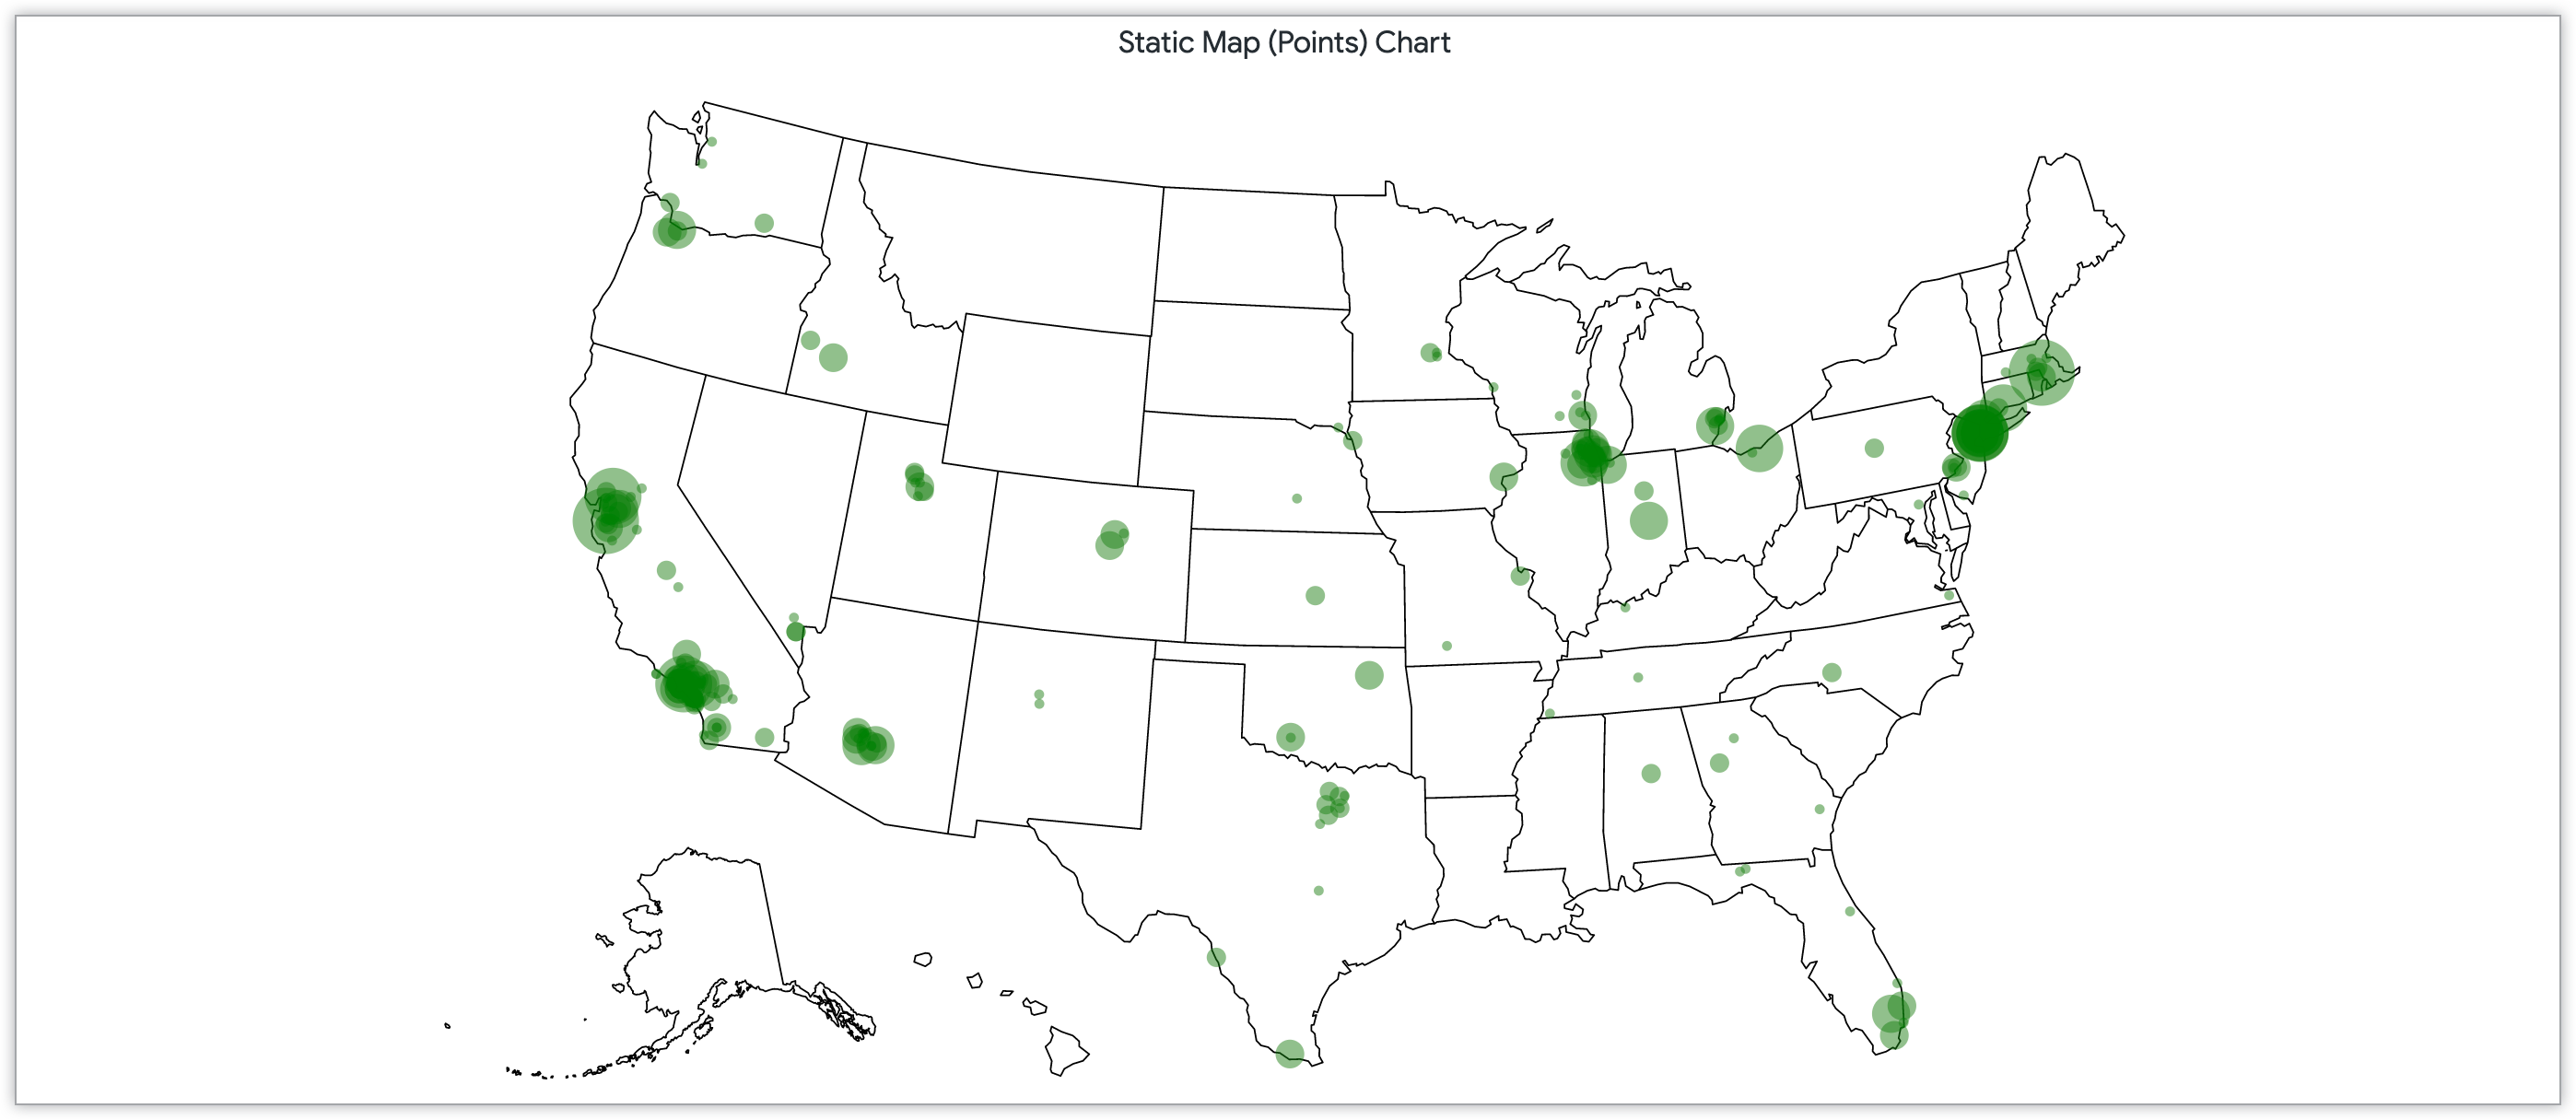 静态地图图表，包含按美国各地邮政编码范围的客户数量划分的点。